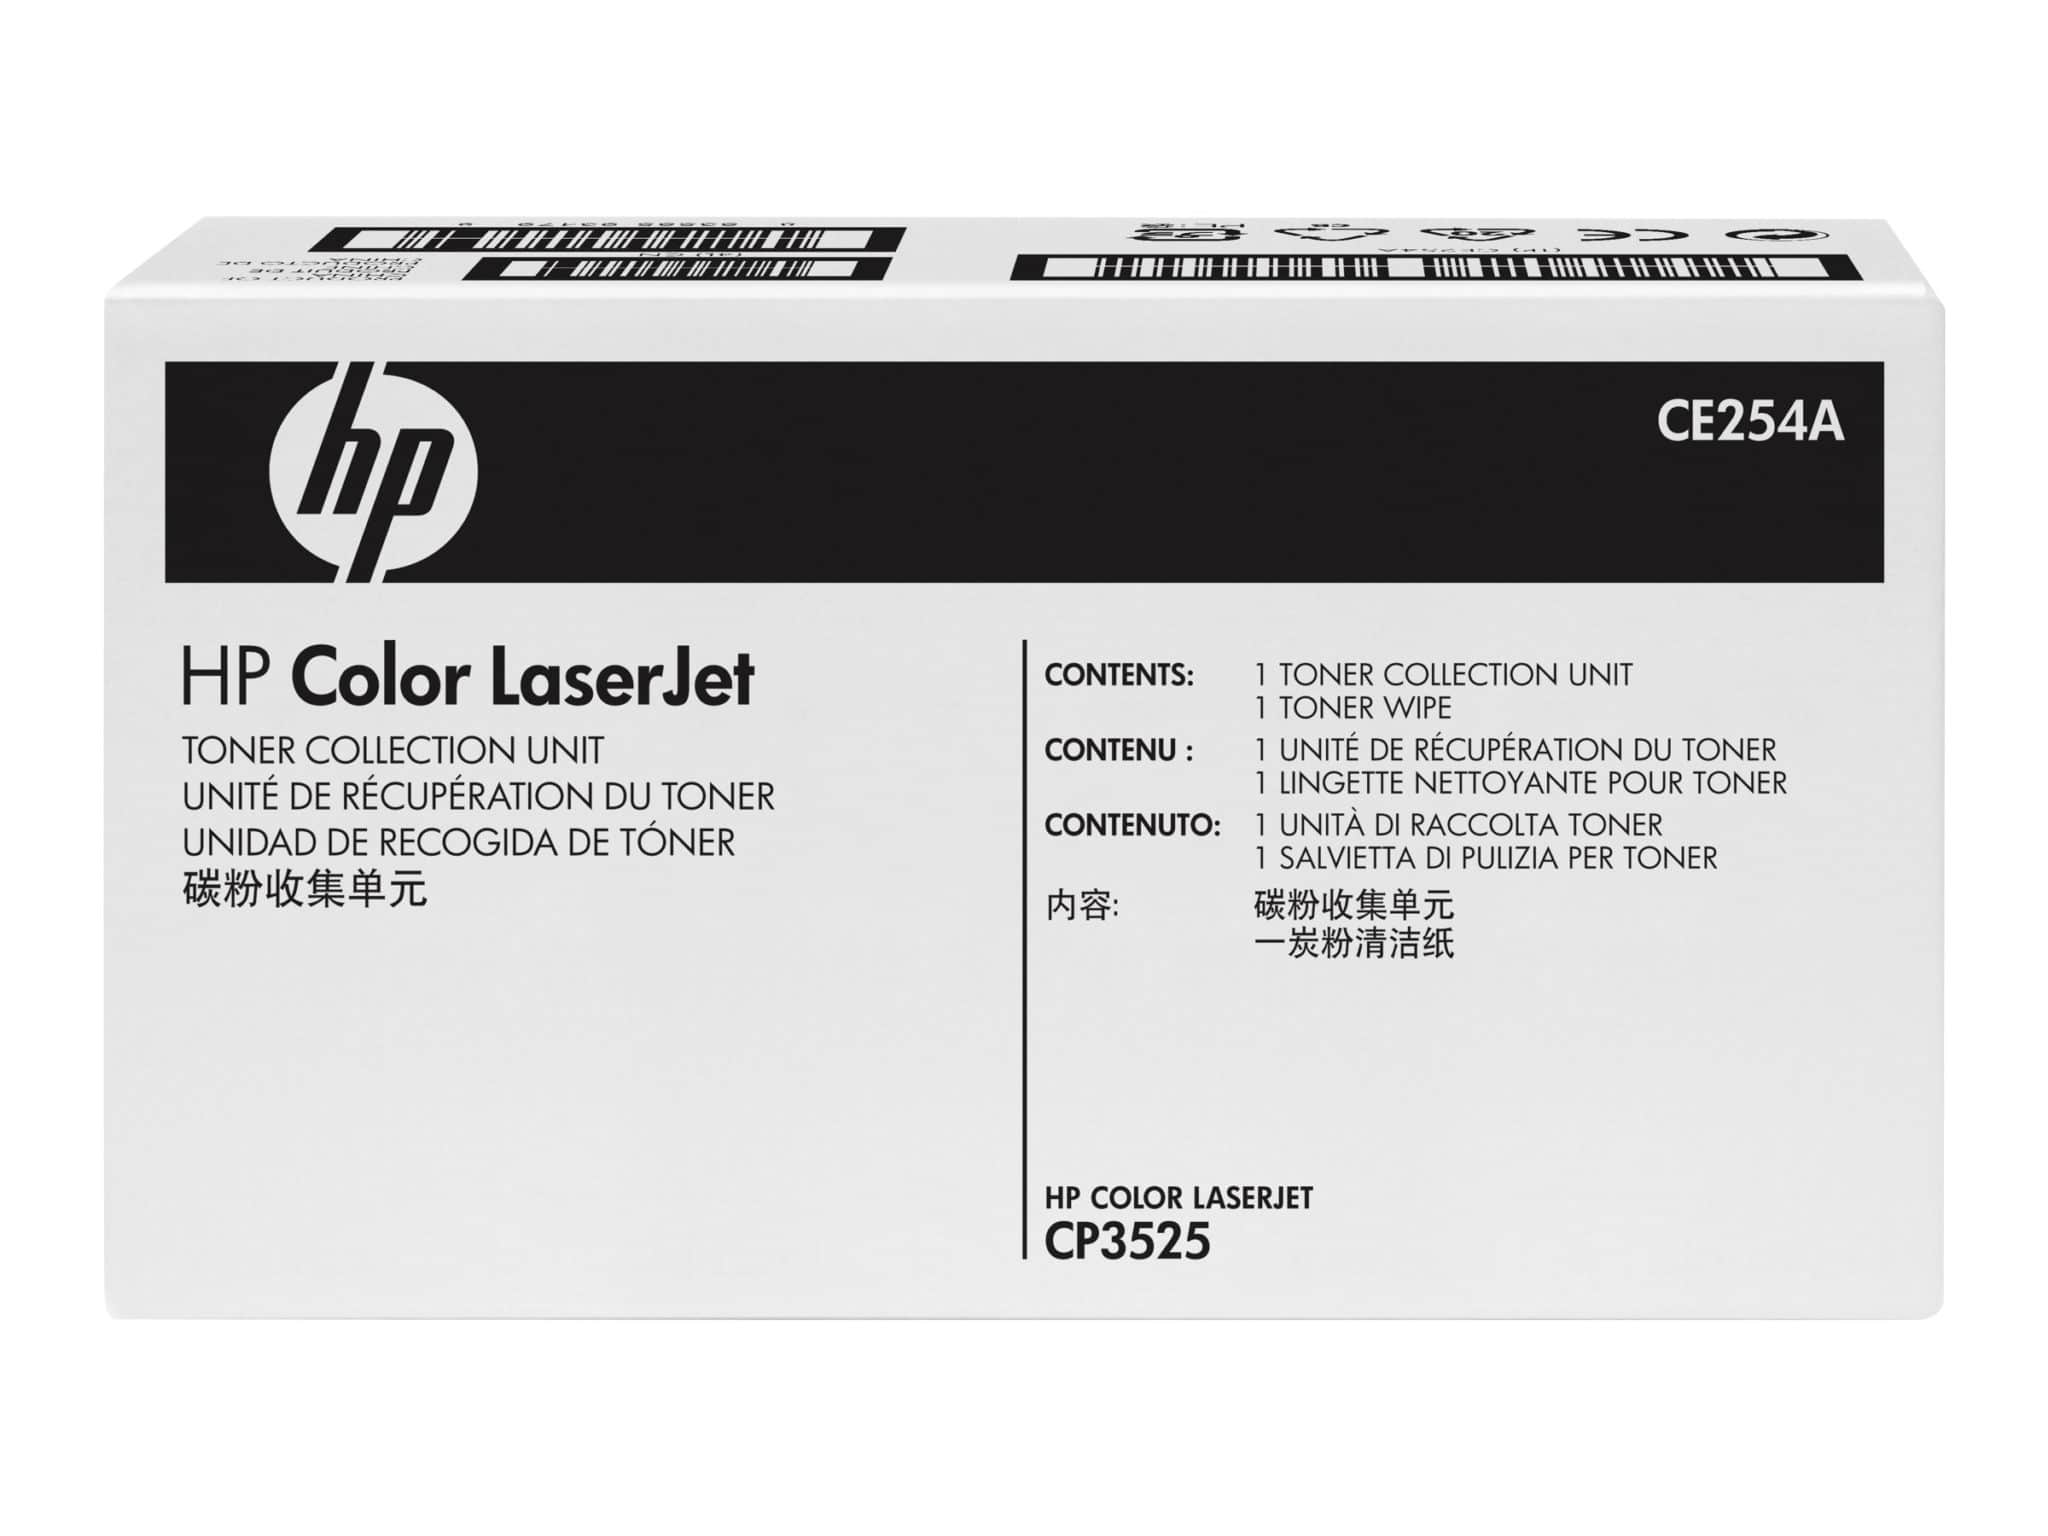 HP Color LaserJet Toner Collection Unit